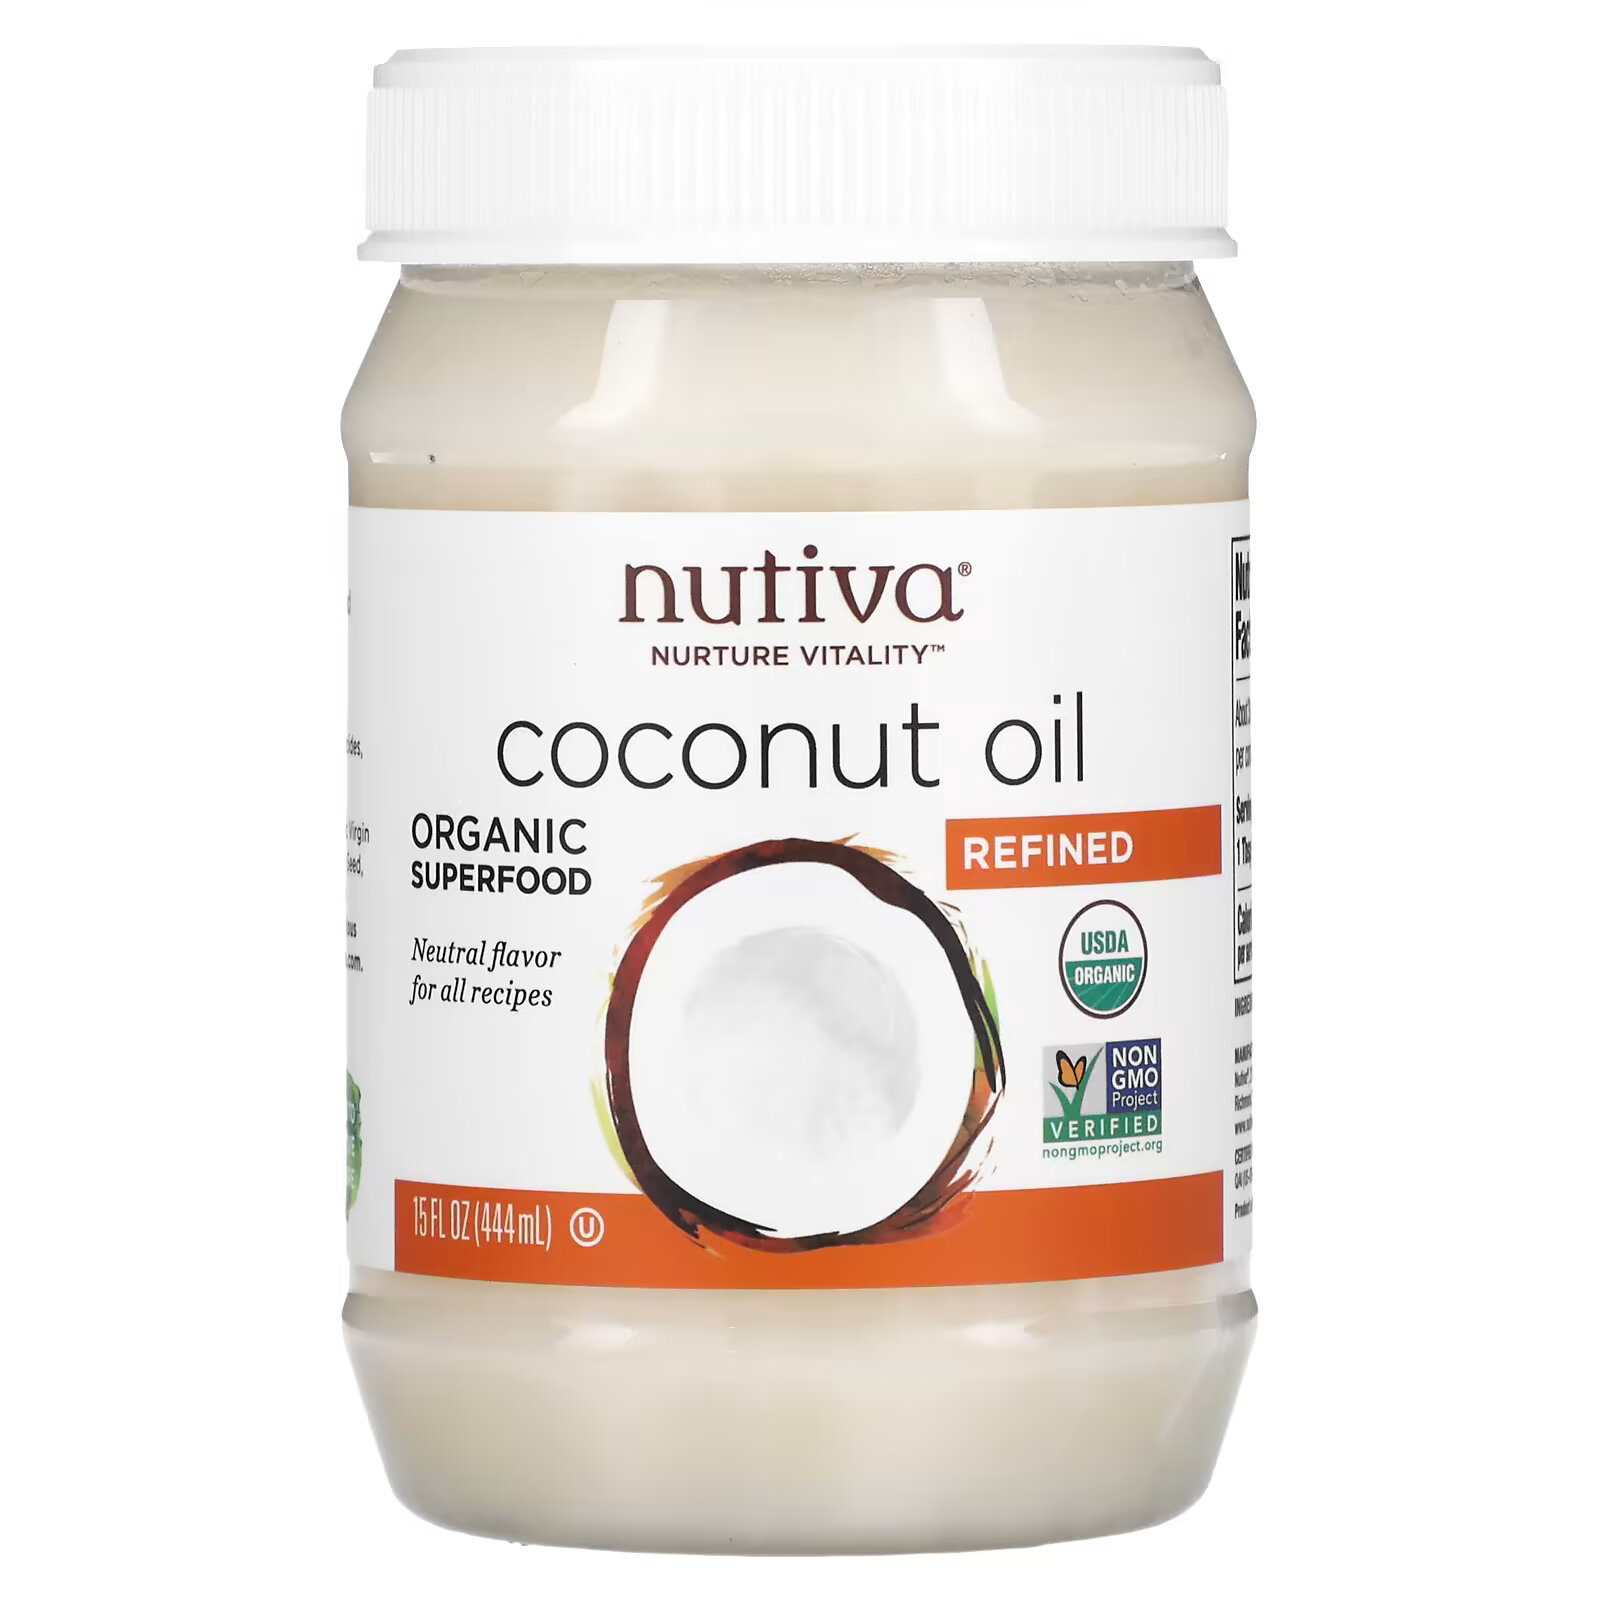 nutiva органическое кокосовое масло первого отжима 444 мл Nutiva, органическое кокосовое масло, рафинированное, 444 мл (15 жидких унций)